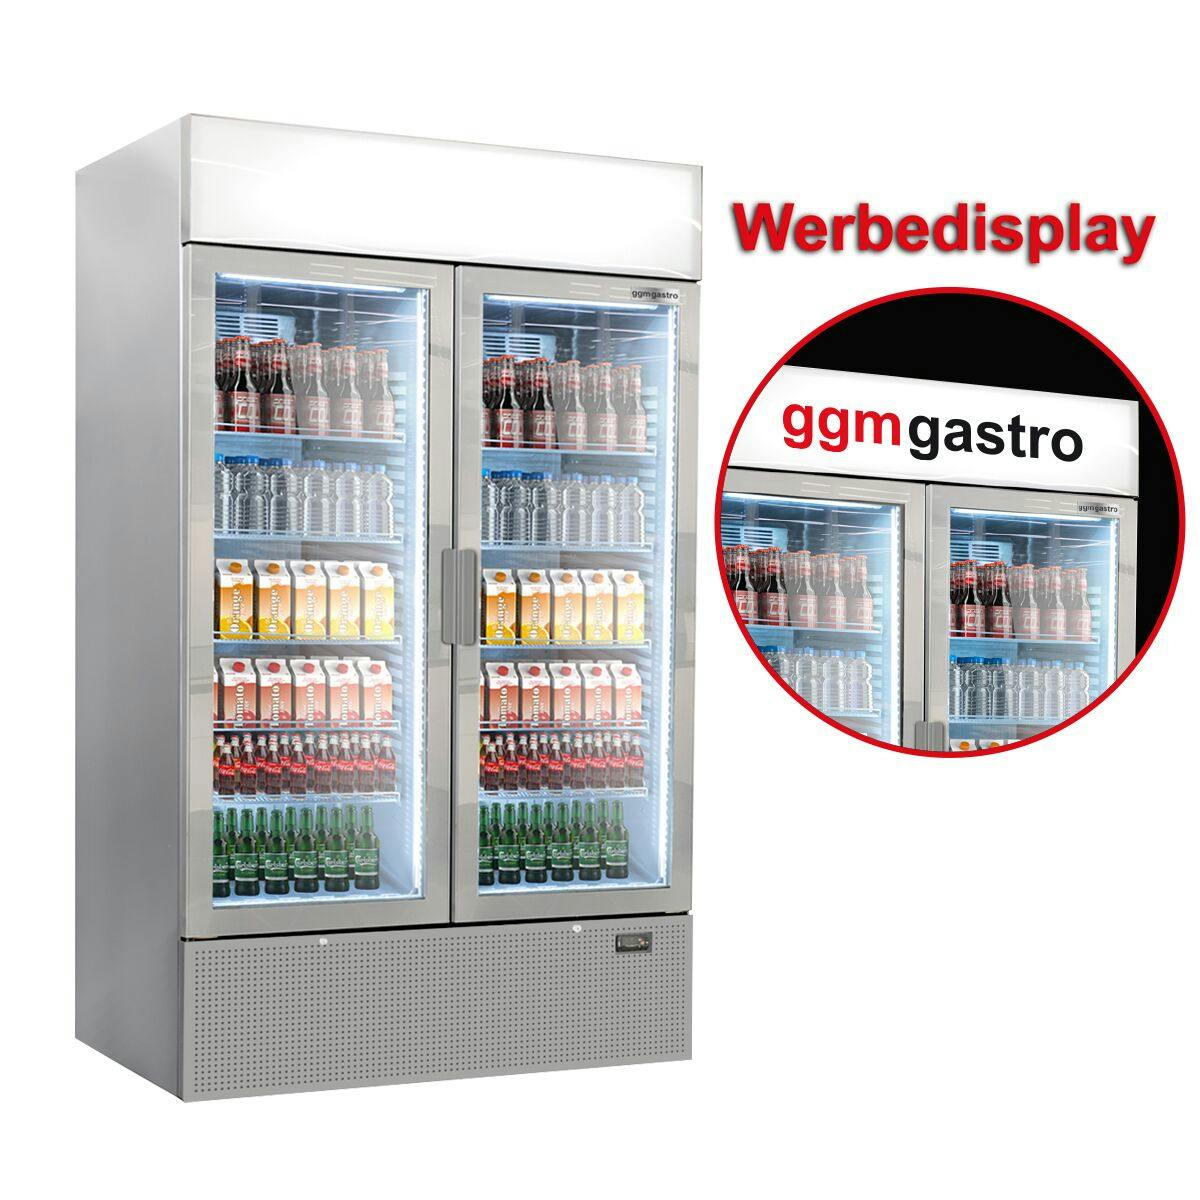 (3 pieces) Beverage refrigerator - 3144 litres (total) - grey